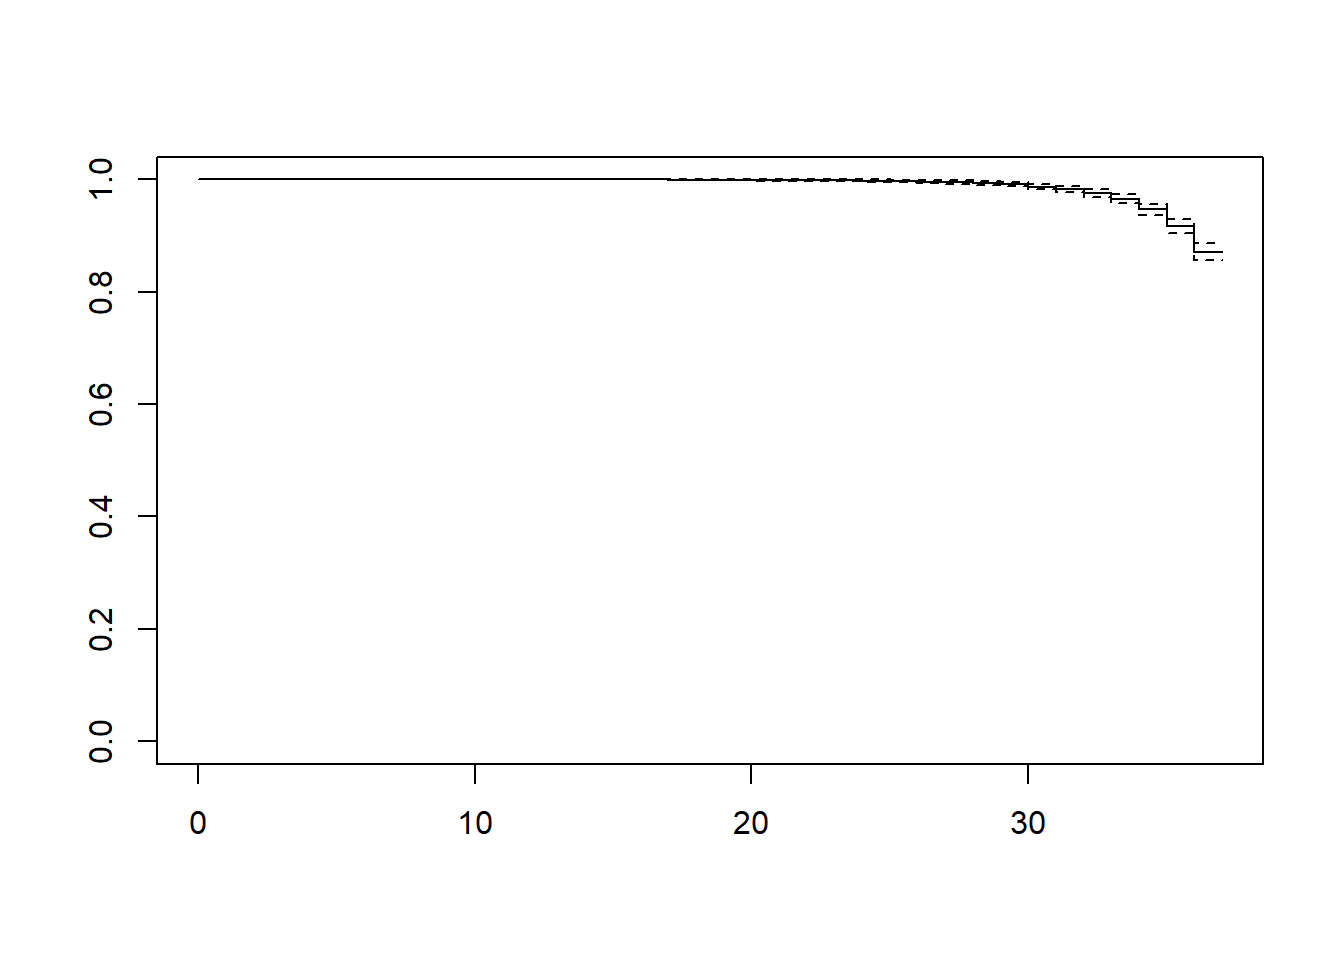 Default survival function plot